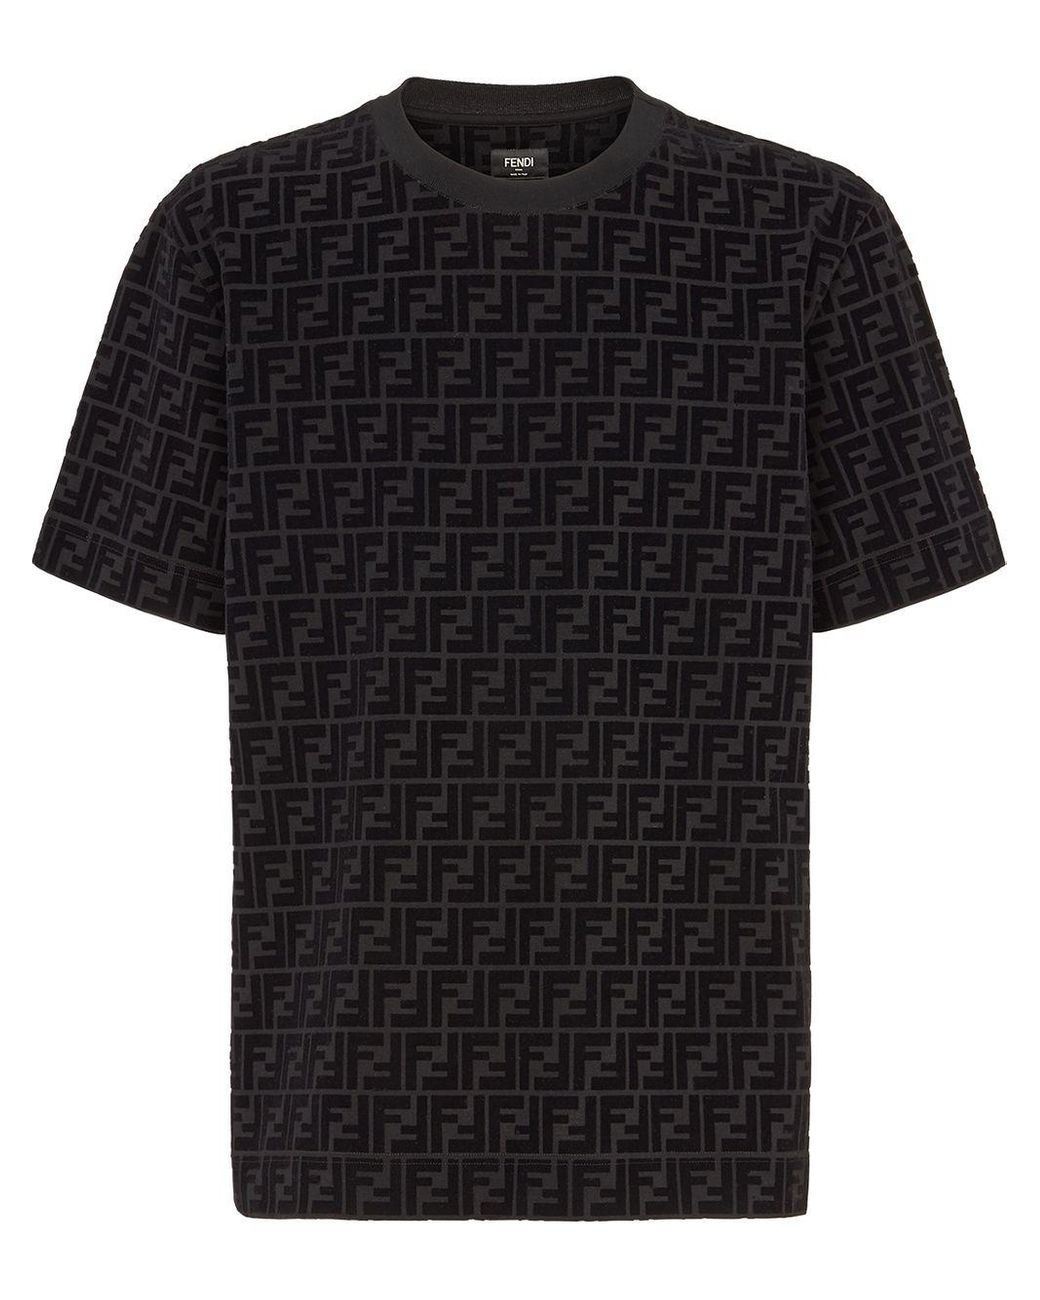 Fendi Ff Logo Flocked T-shirt in Black for Men - Lyst